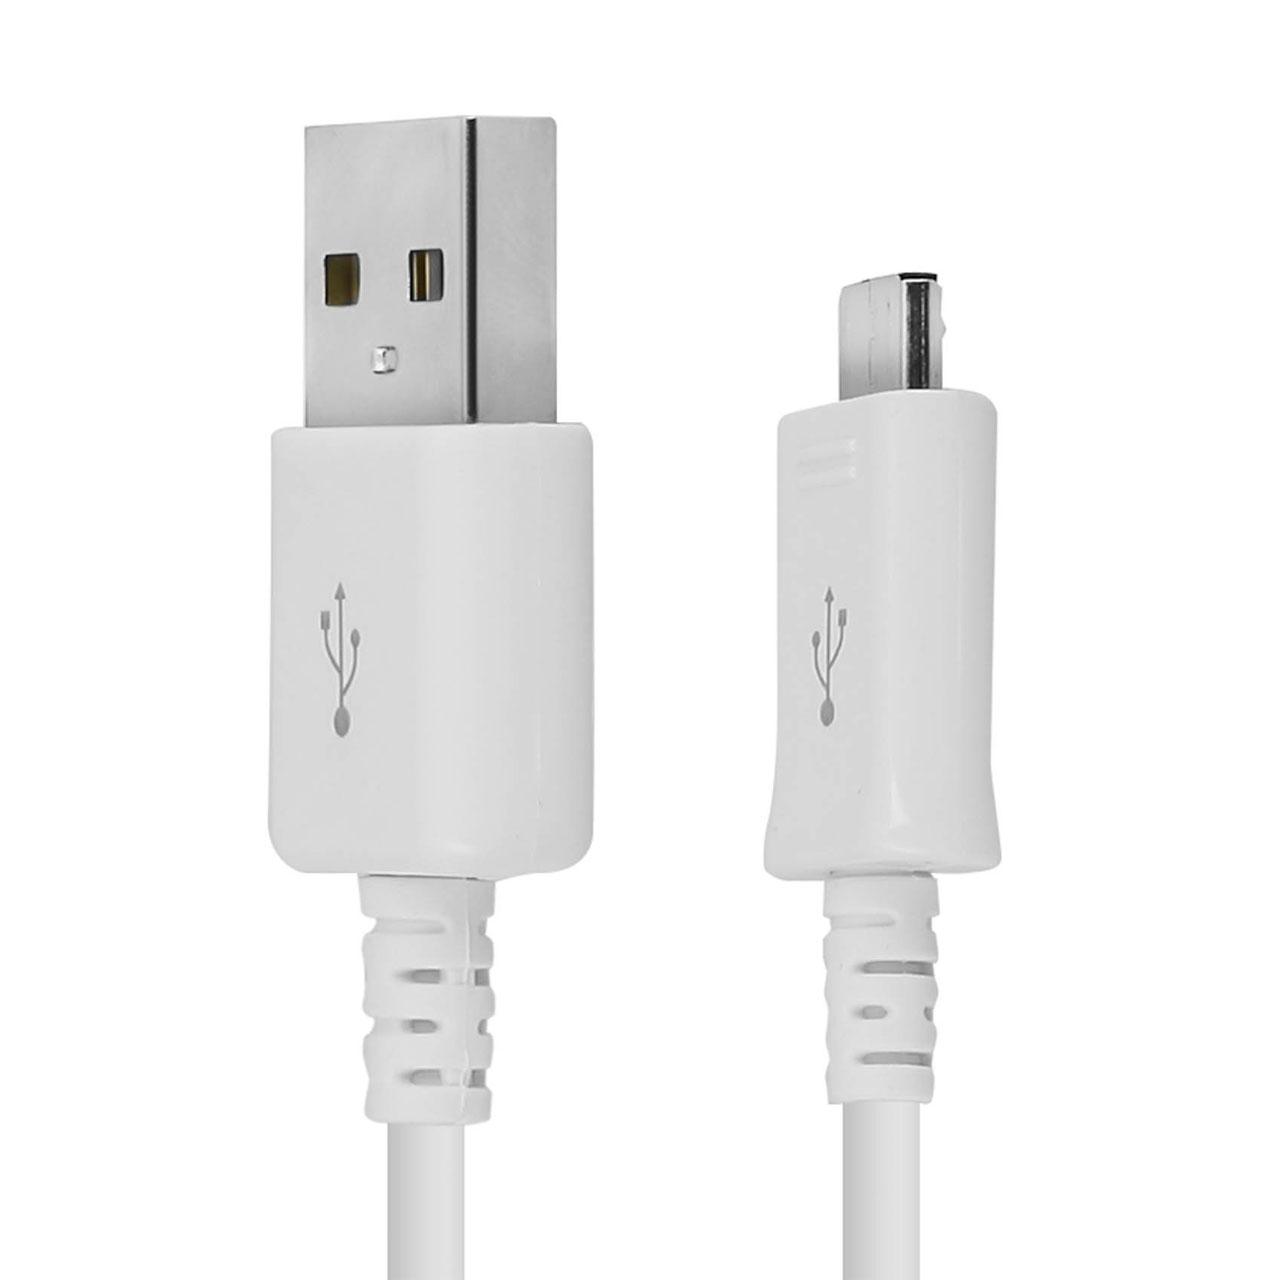 کابل شارژ Micro USB | فروشگاه اینترنتی دیجیک